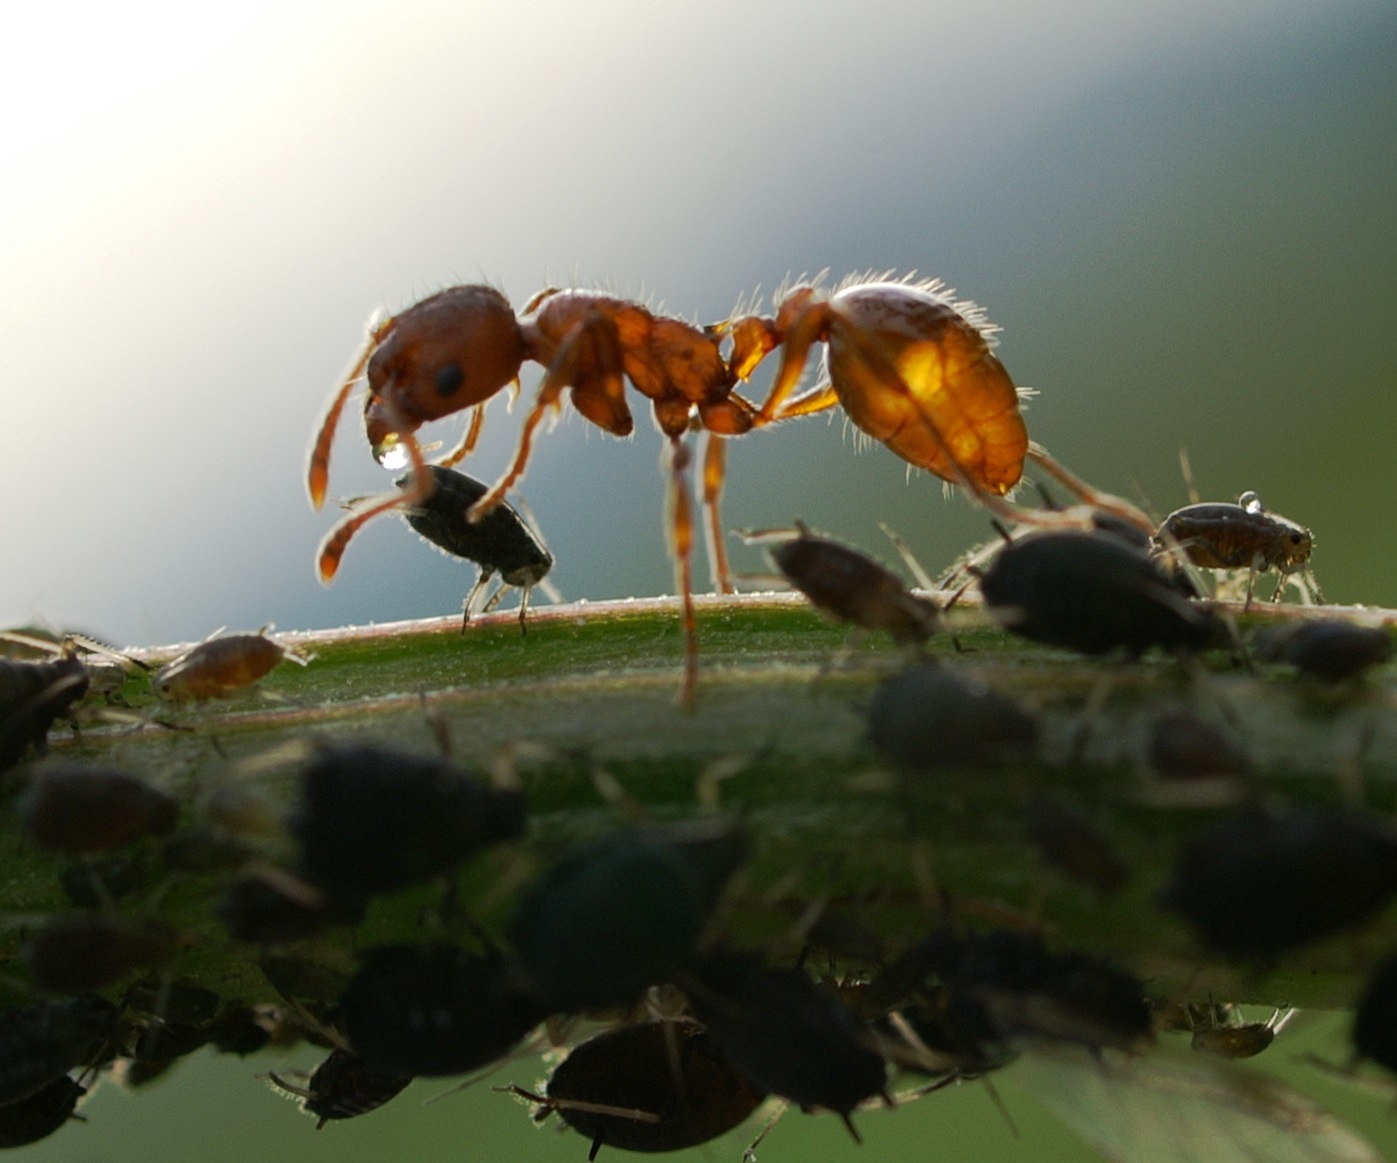 Eine Ameise nimmt von einer Blattlaus einen Tropfen Honigtau auf. © Friedrich Boehringer, Wikimedia Commons